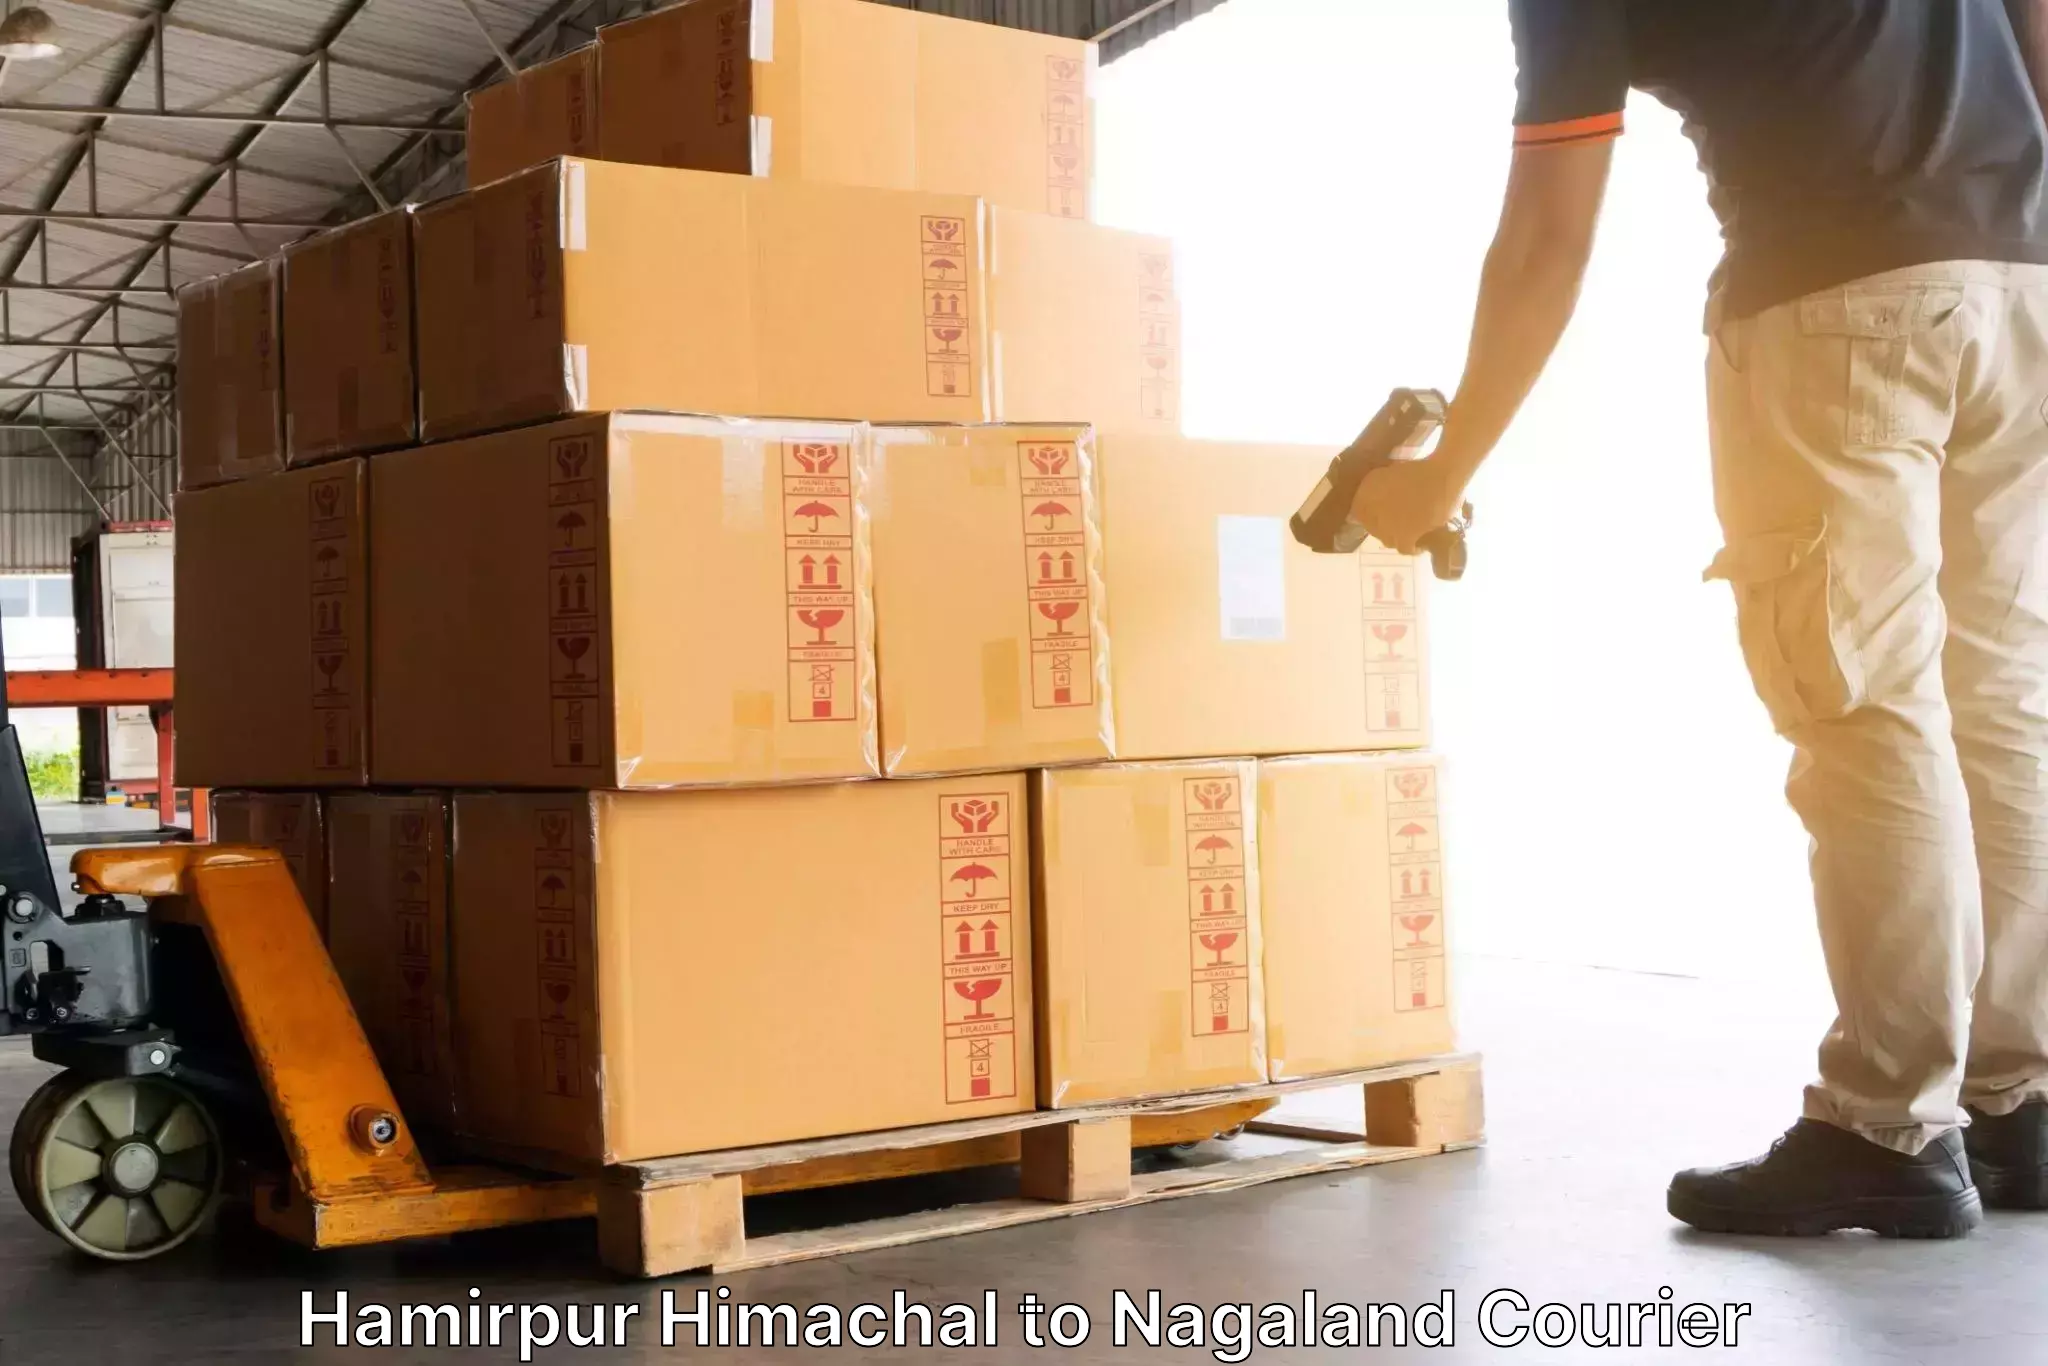 Quick dispatch service Hamirpur Himachal to Peren